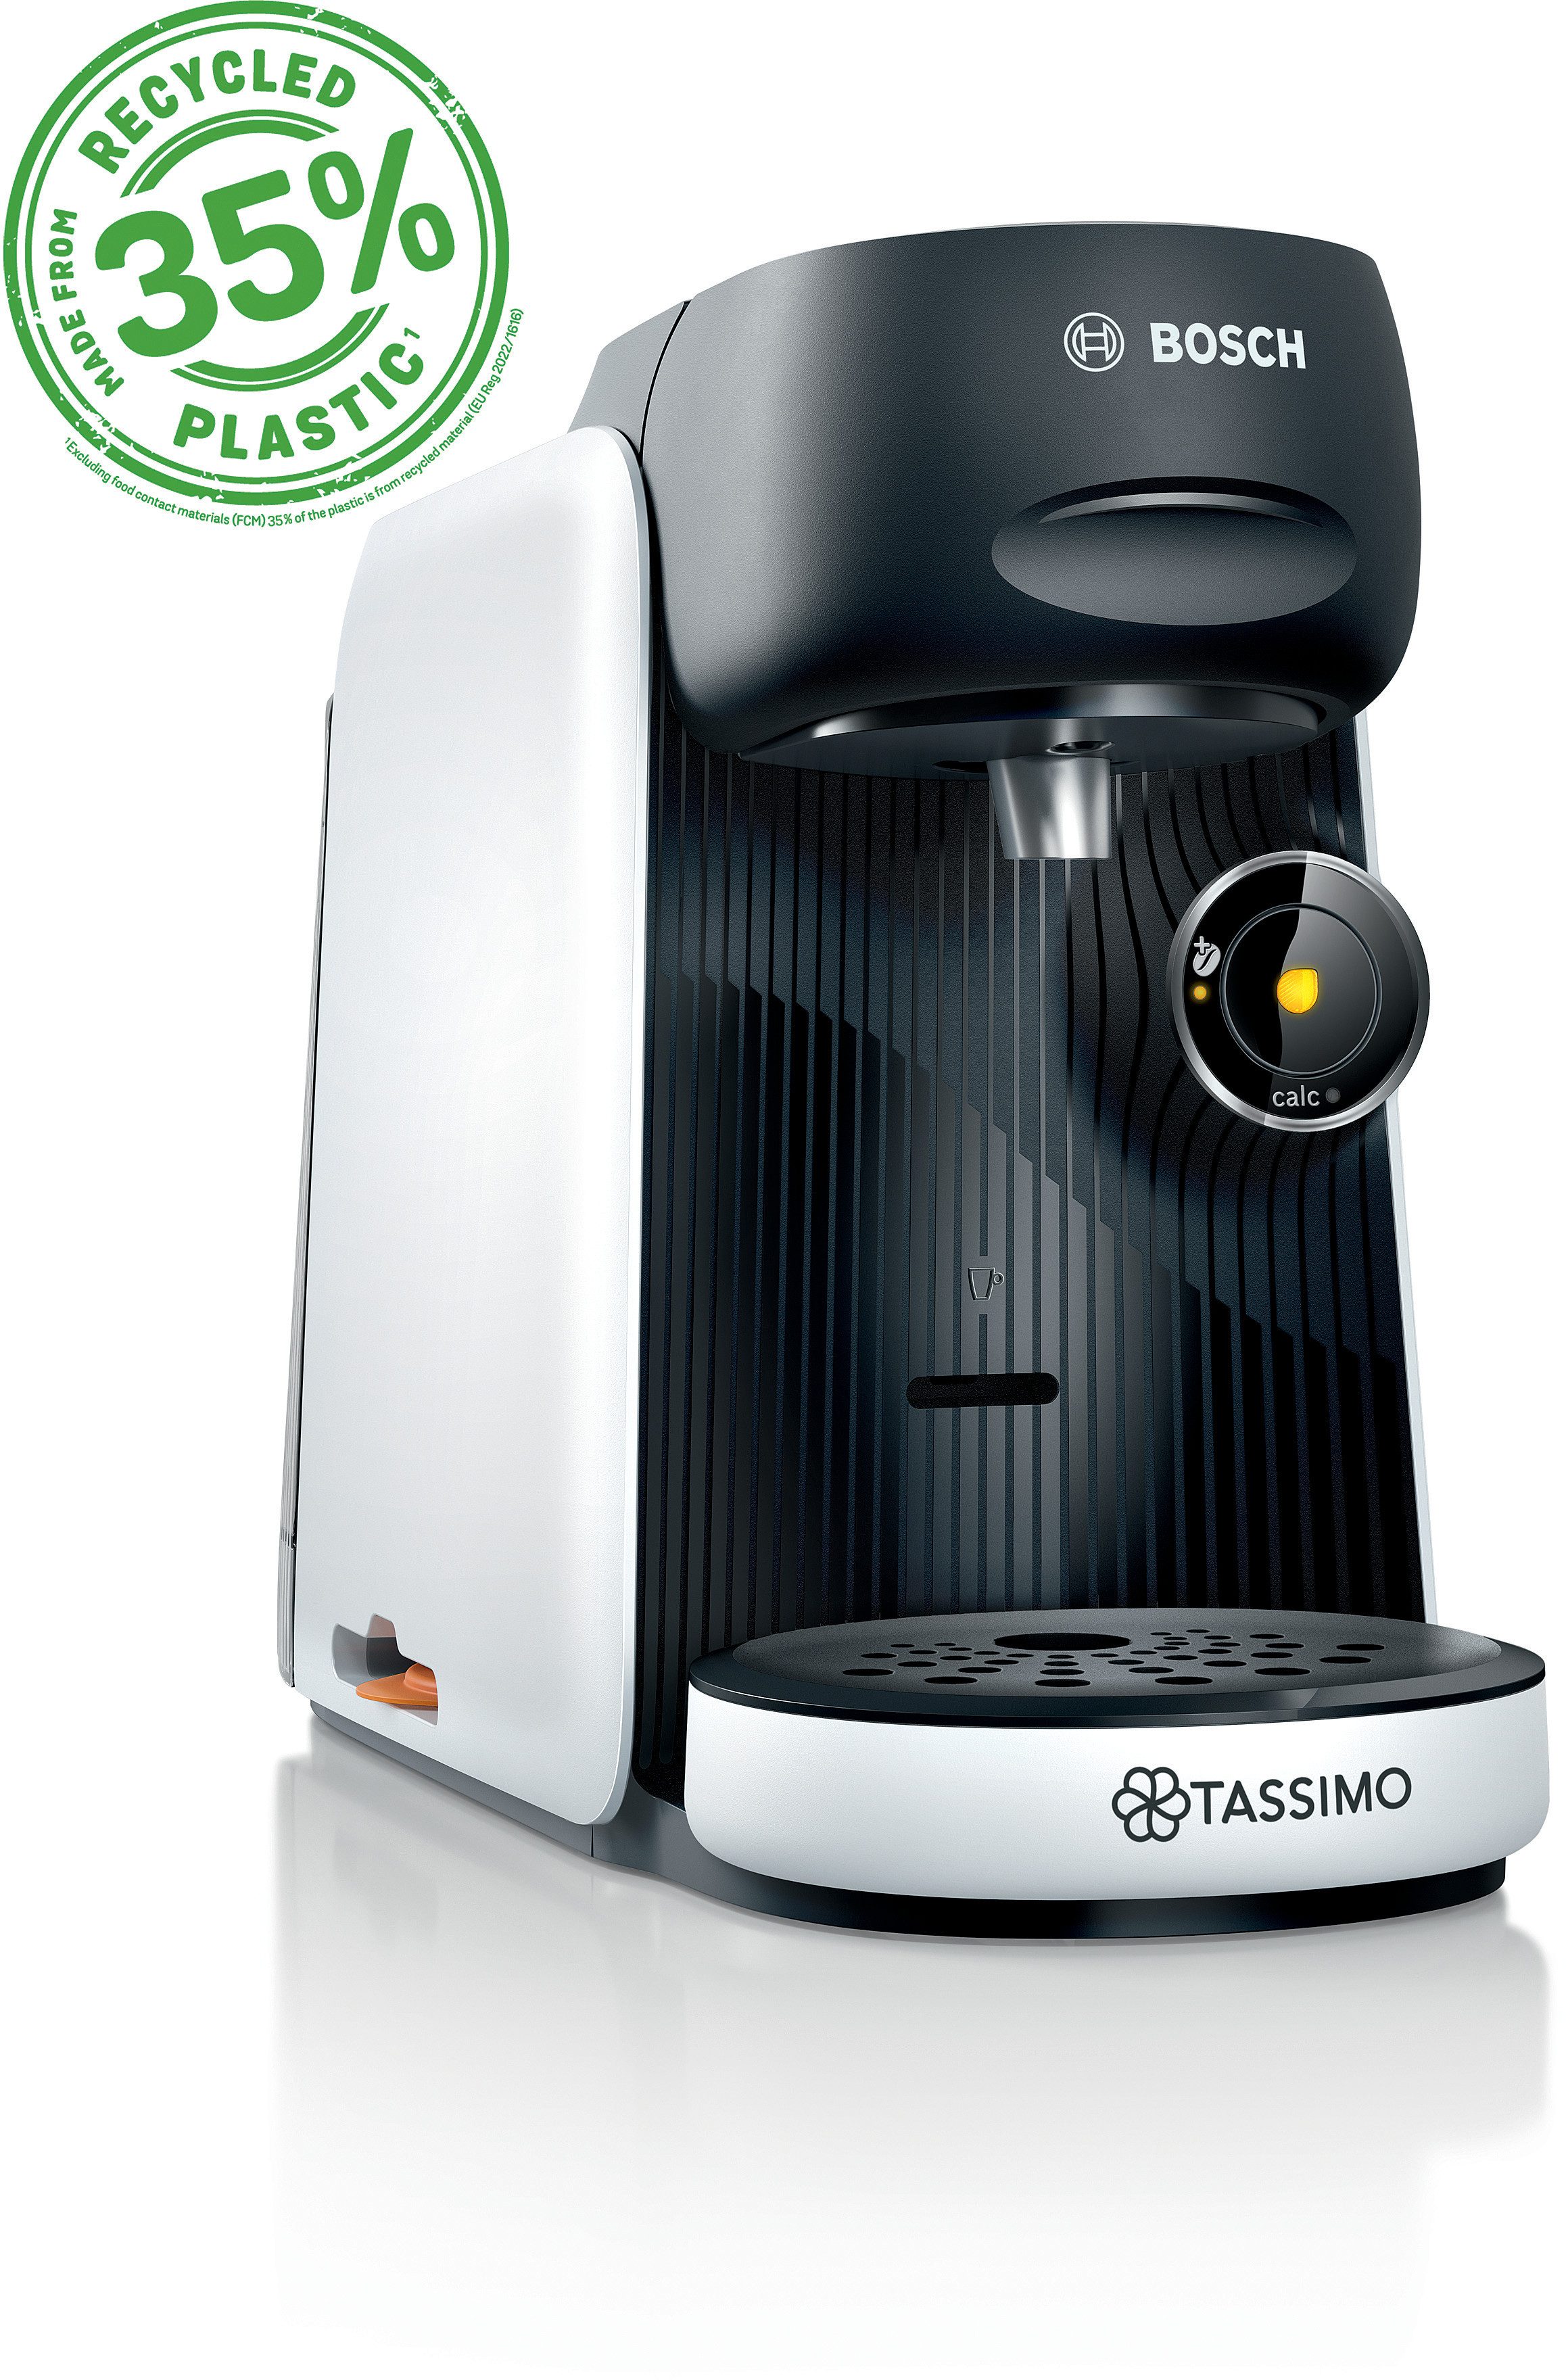 TASSIMO Kapselmaschine Tassimo finesse friendly TAS163E, One-Touch Bedienung, über 70 Getränke, nachhaltig, weiß/schwarz